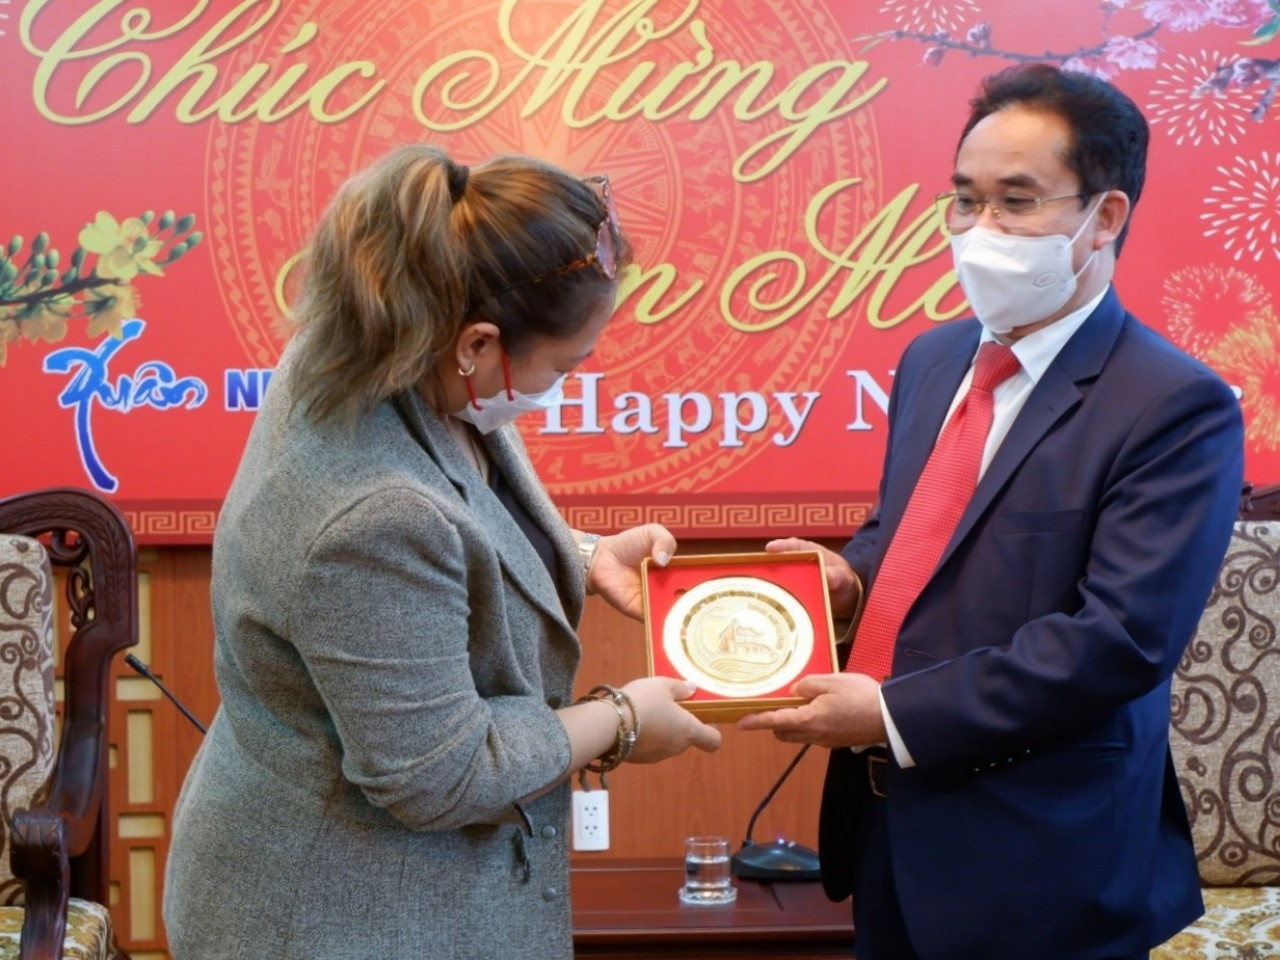 Phó Chủ tịch UBND tỉnh Trần Anh Tuấn tặng quà lưu niệm đến đại diện Tổ chức Habitat. Ảnh: X.H